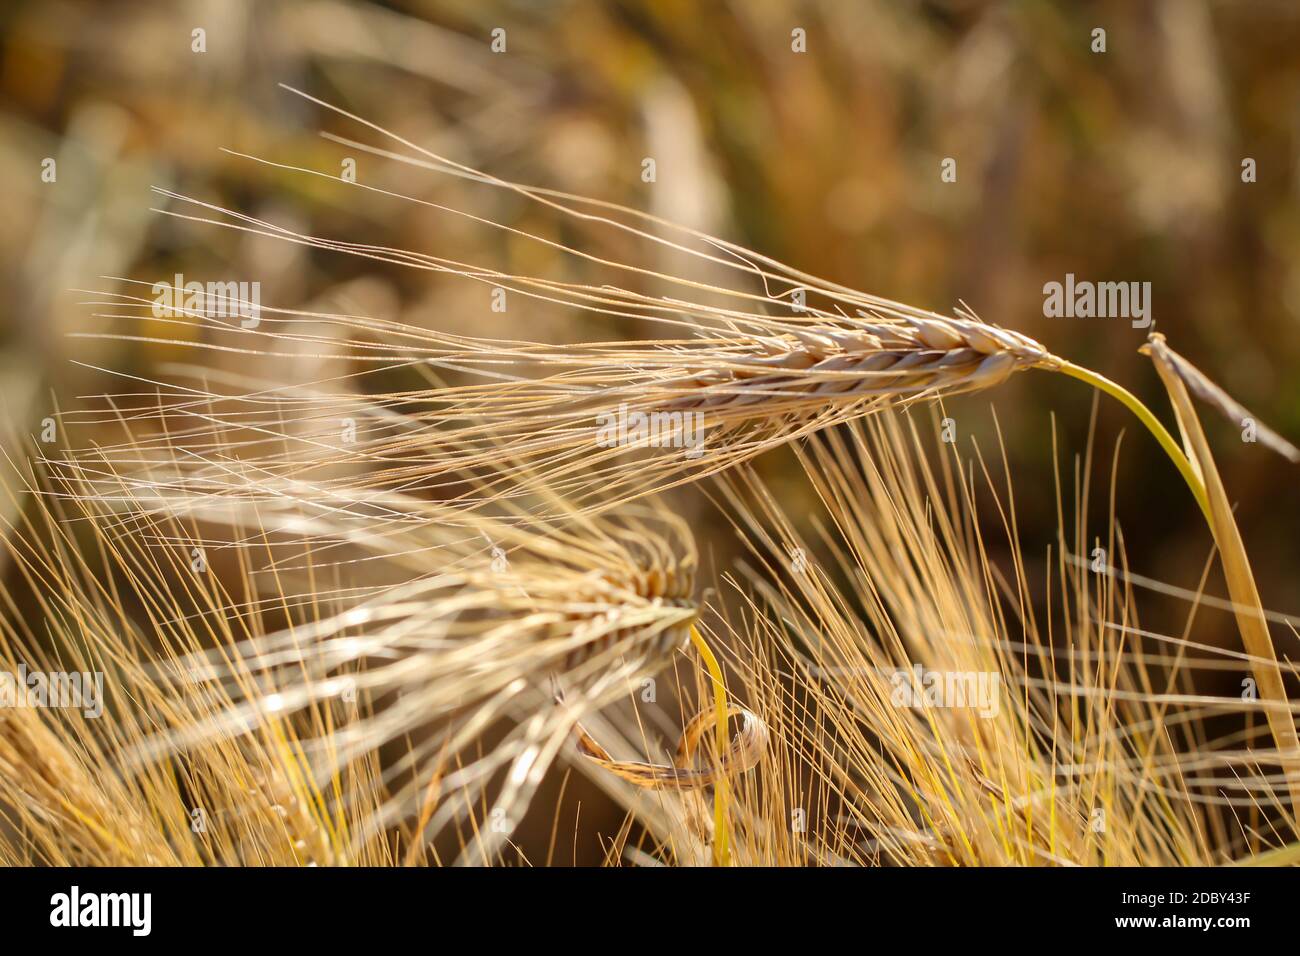 Vue d'un champ de grain avec des épis de blé qui seront bientôt mûrs. Banque D'Images